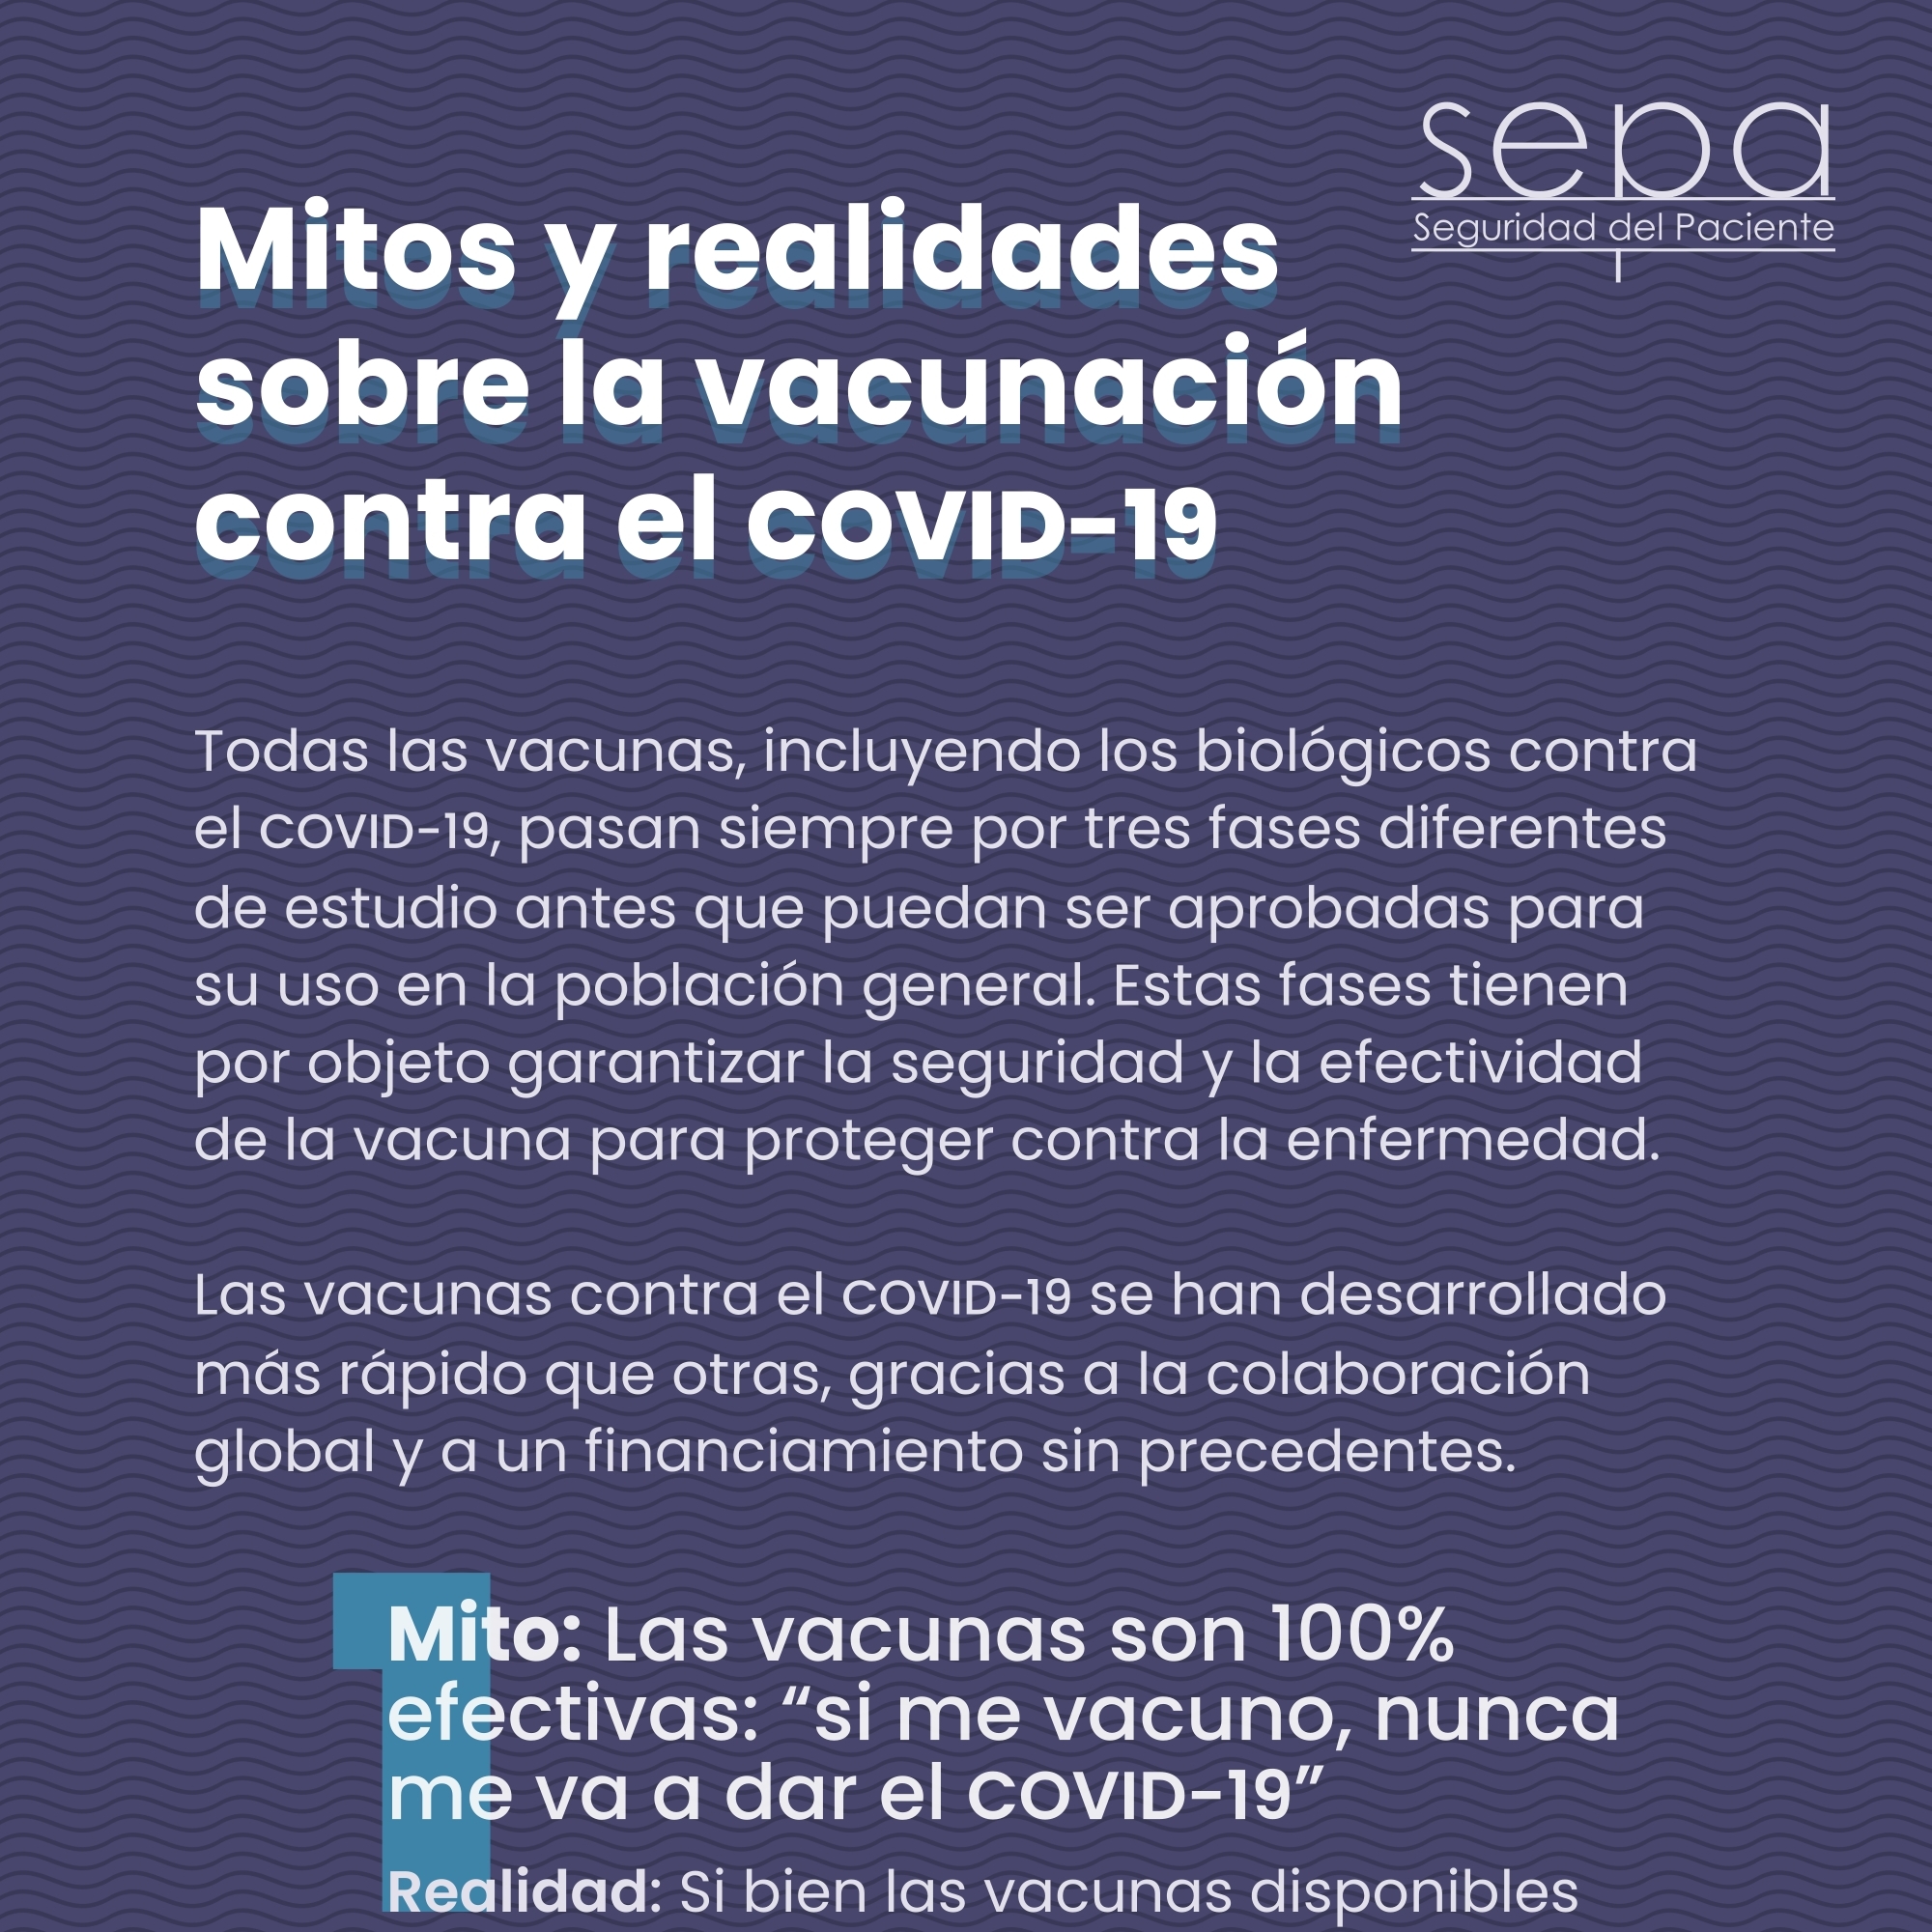 Boletín #2 de 2021 de Seguridad del Paciente - Mitos y realidades sobre la vacunación contra el COVID-19